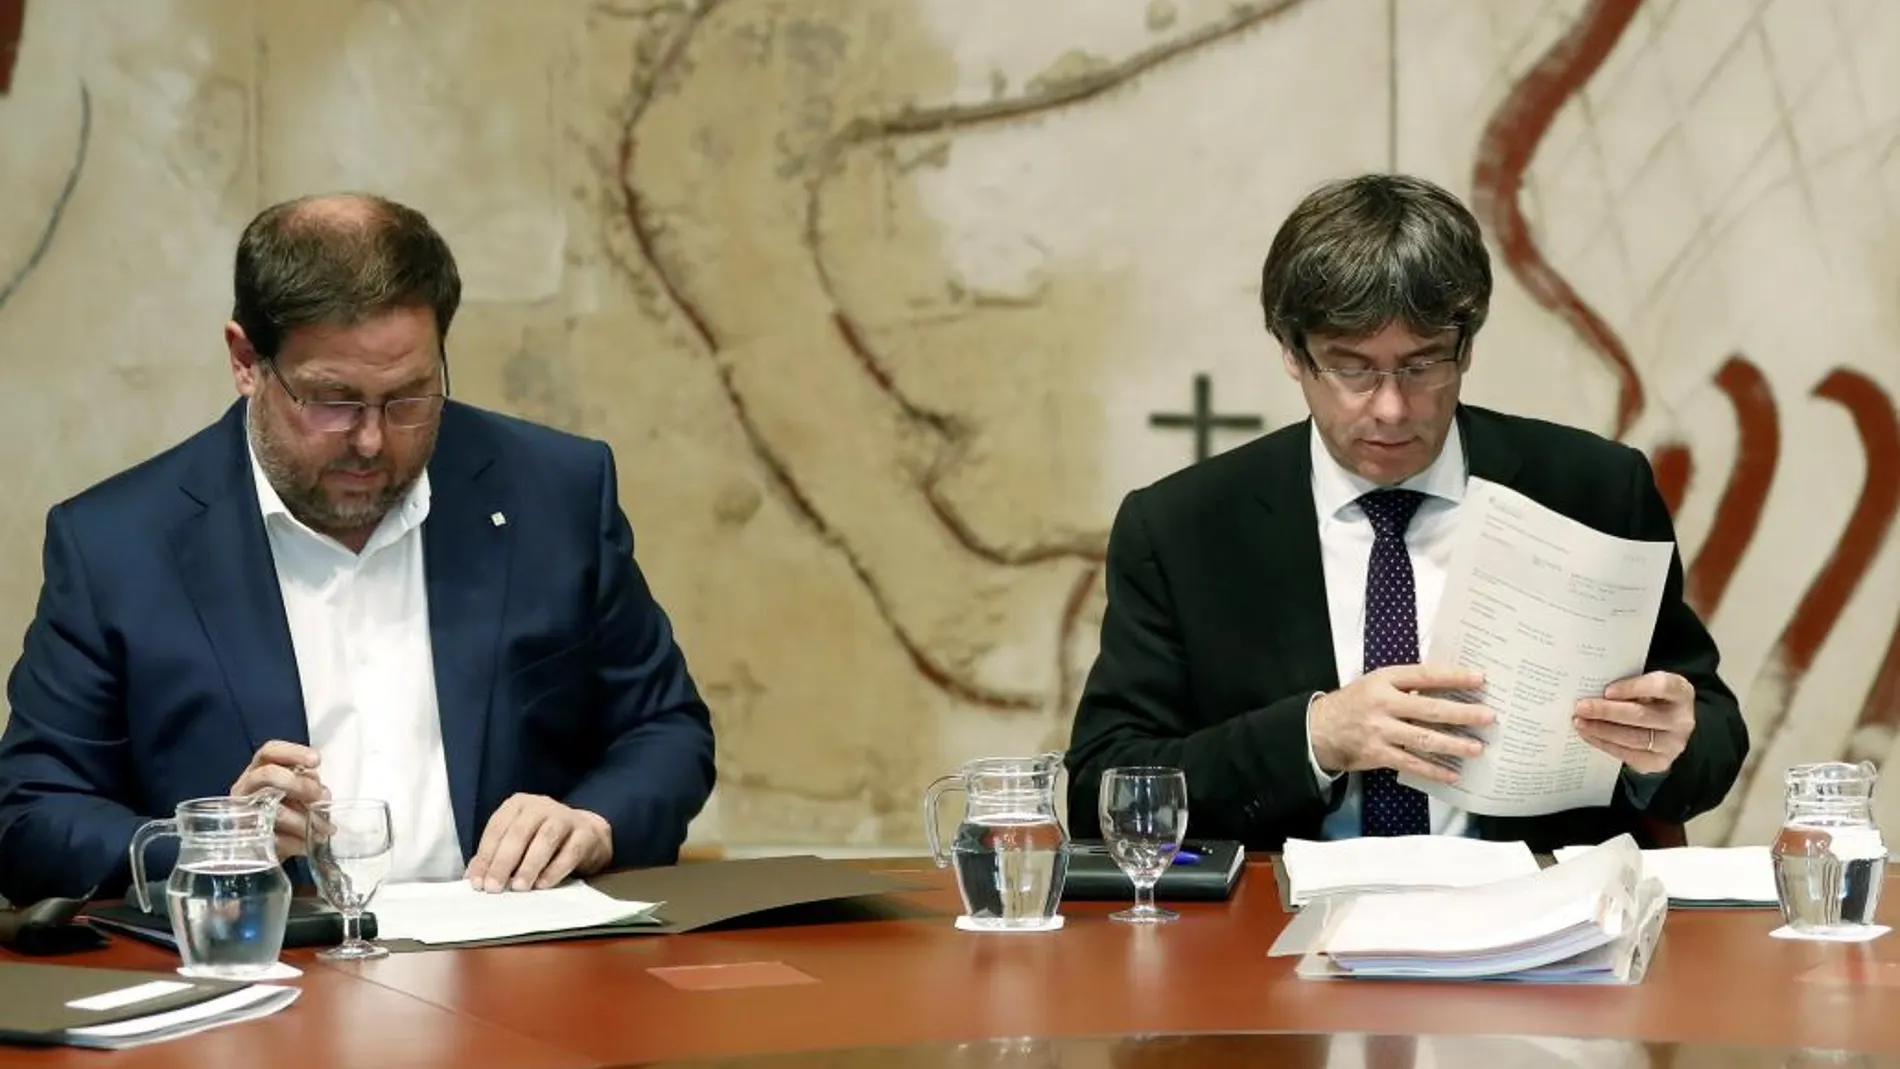 El presidente de la Generalitat, Carles Puigdemont, y su vicepresidente, Oriol Junqueras, durante la reunión semanal del gobierno catalán